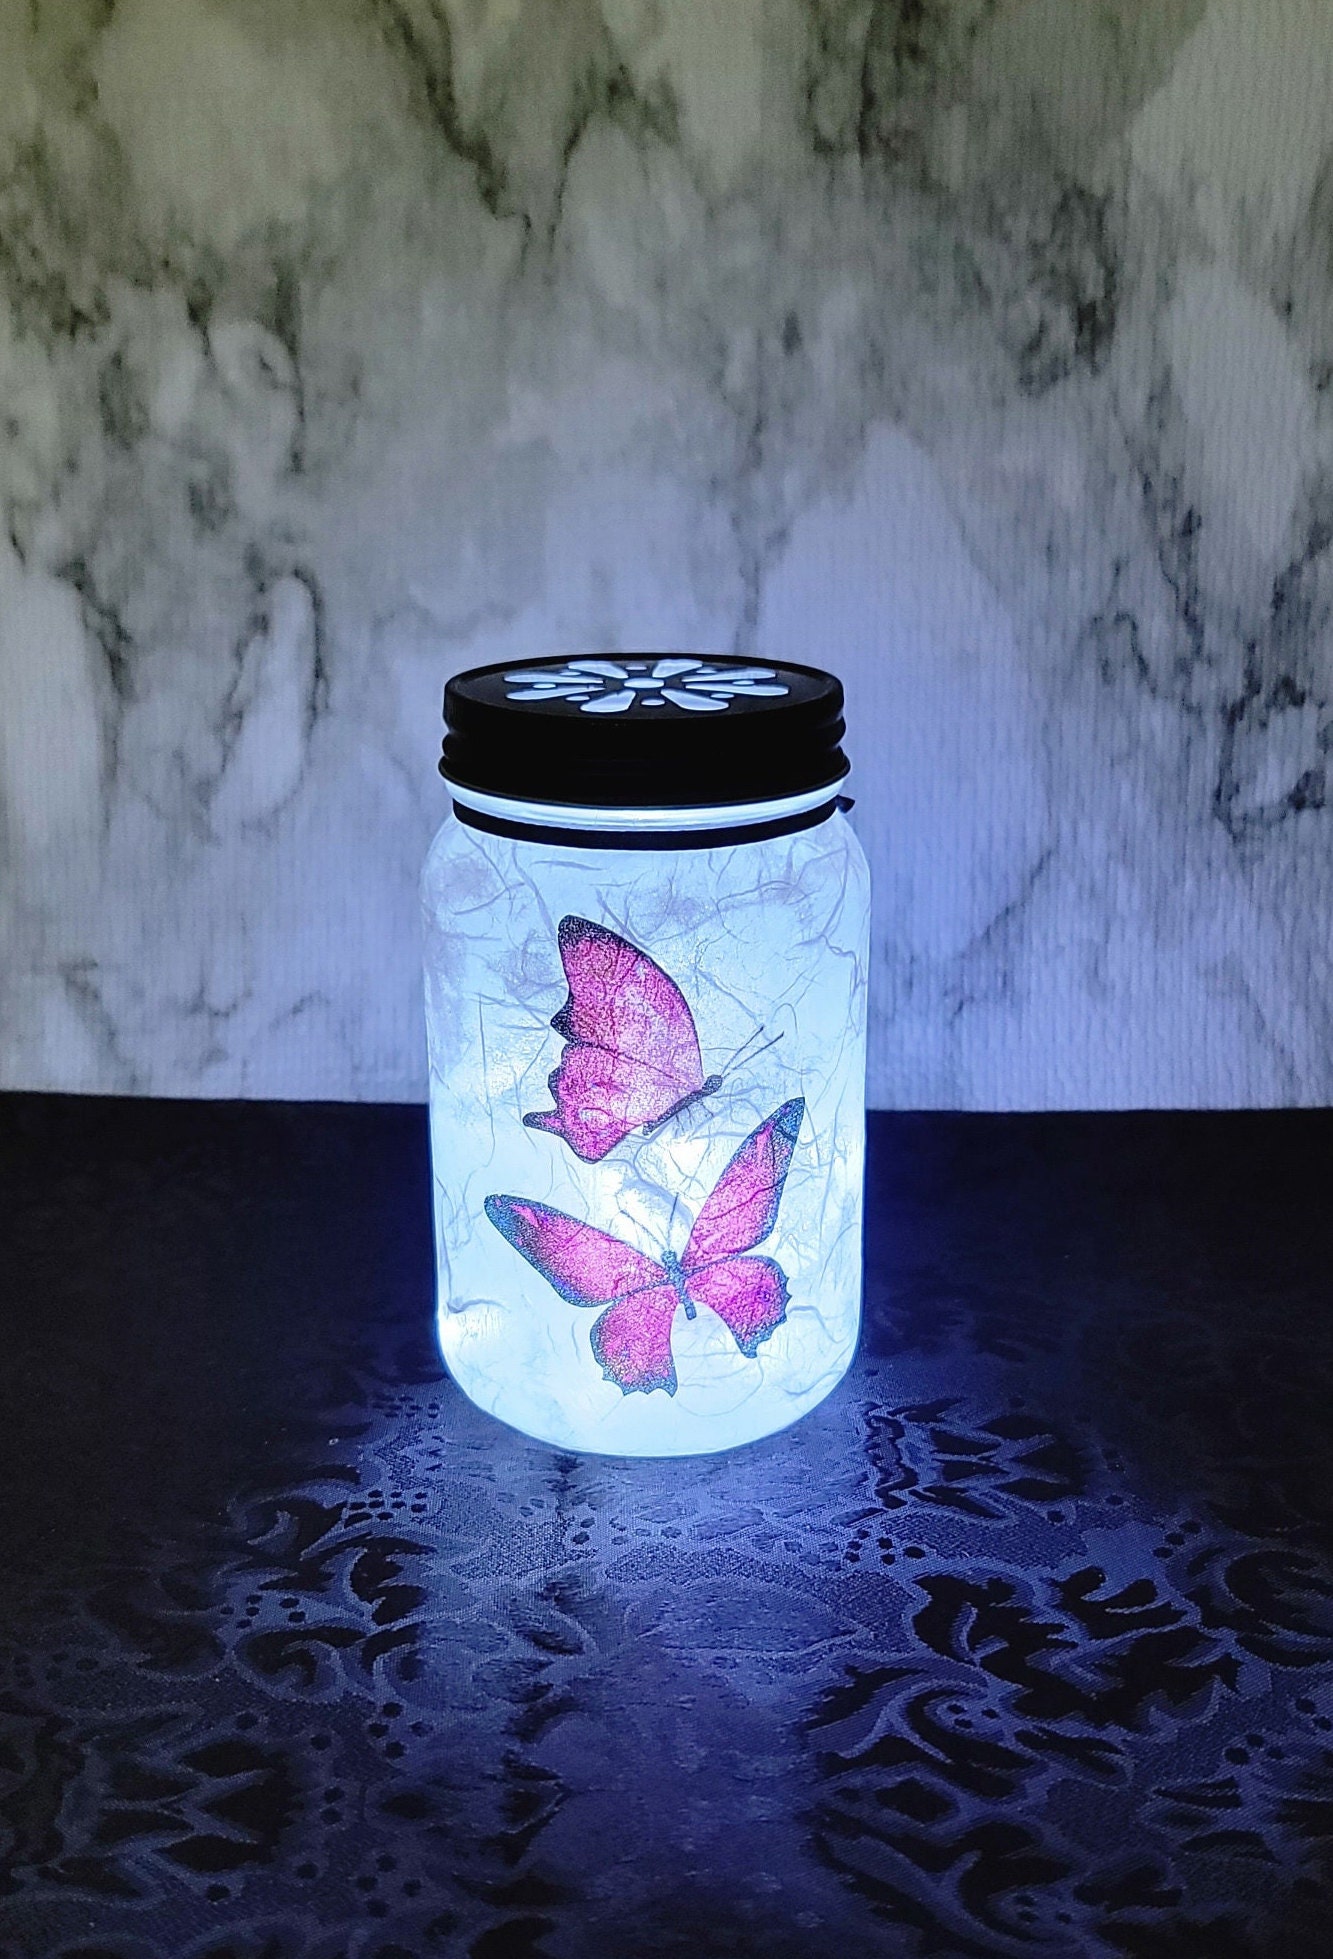 inkl Batterien Butterfly in a Jar SCHMETTERLING im Glas PINK/SCHW. 